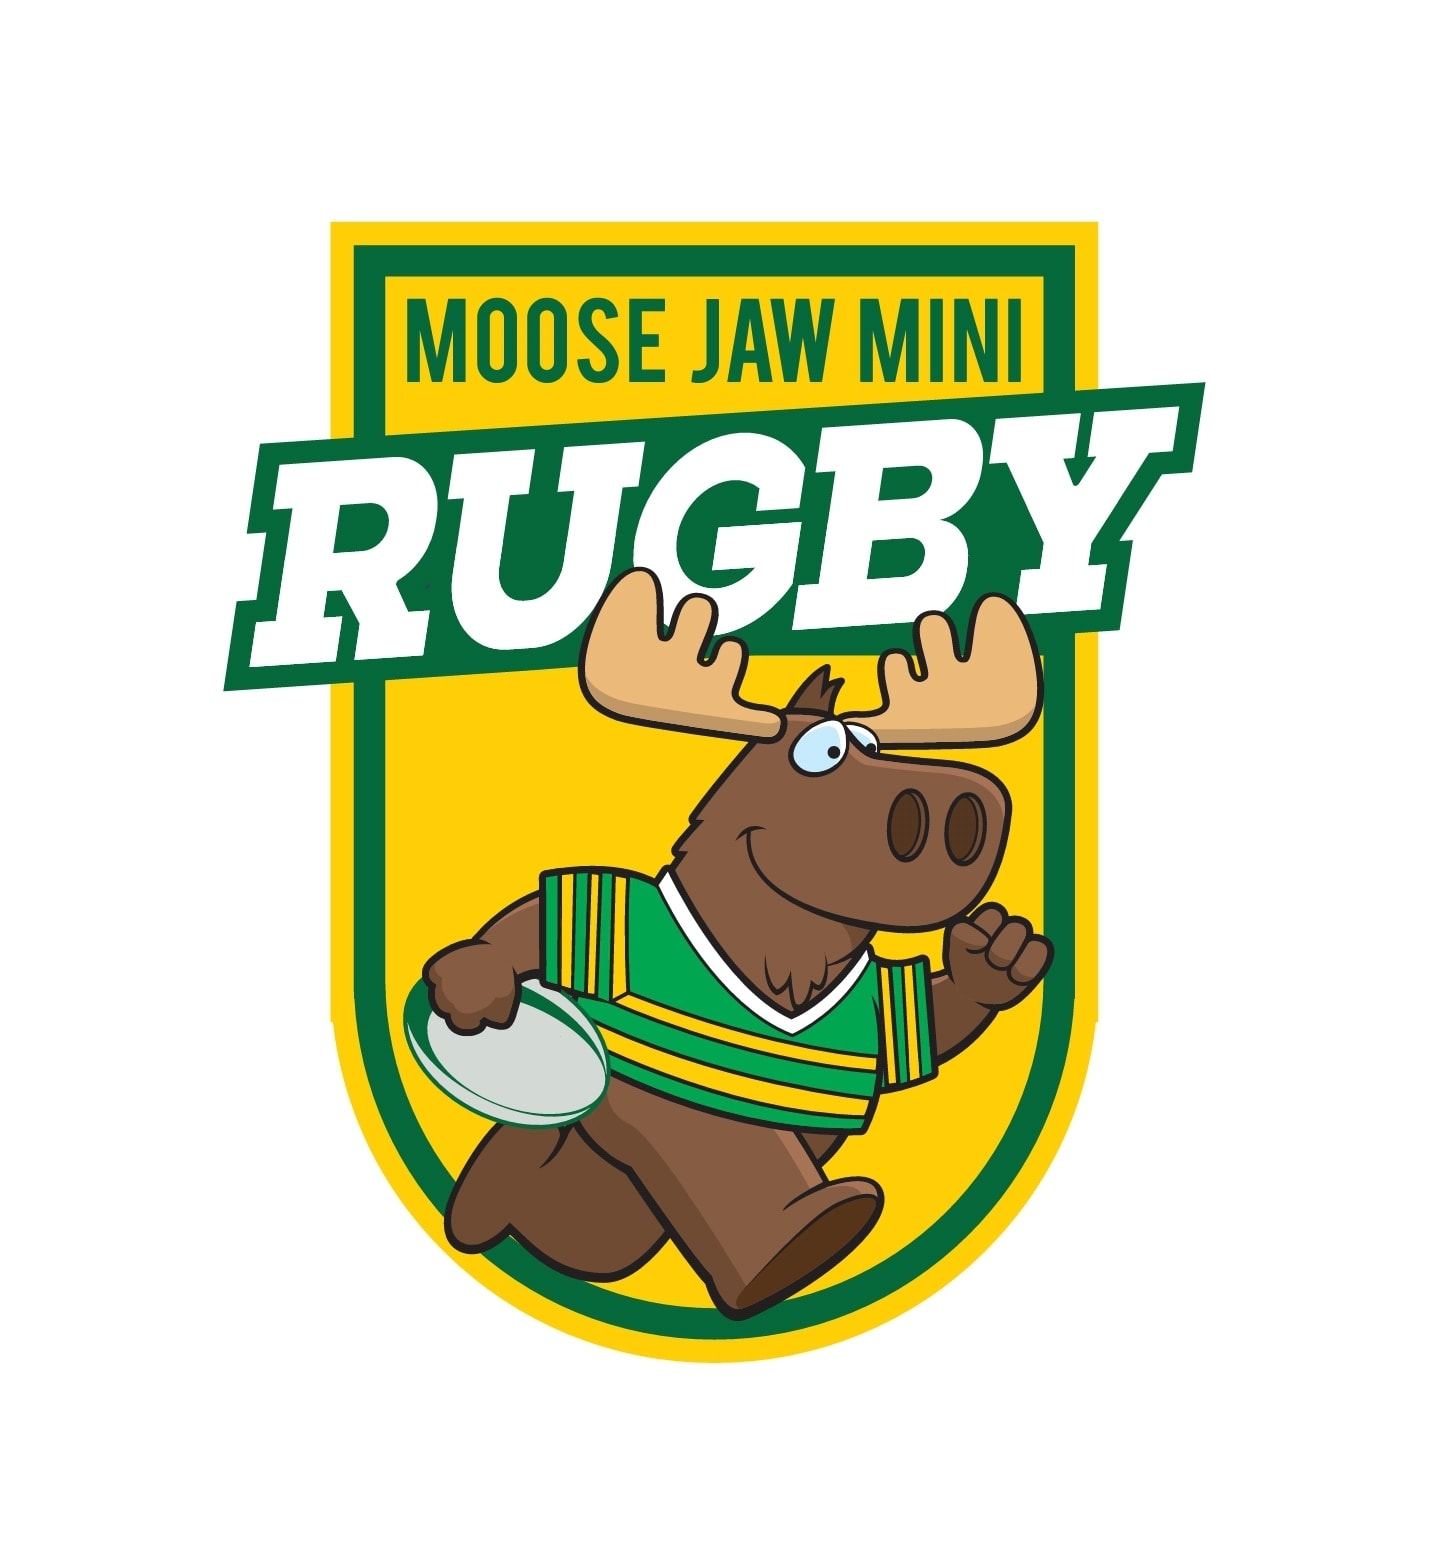 Moose Jaw Minis